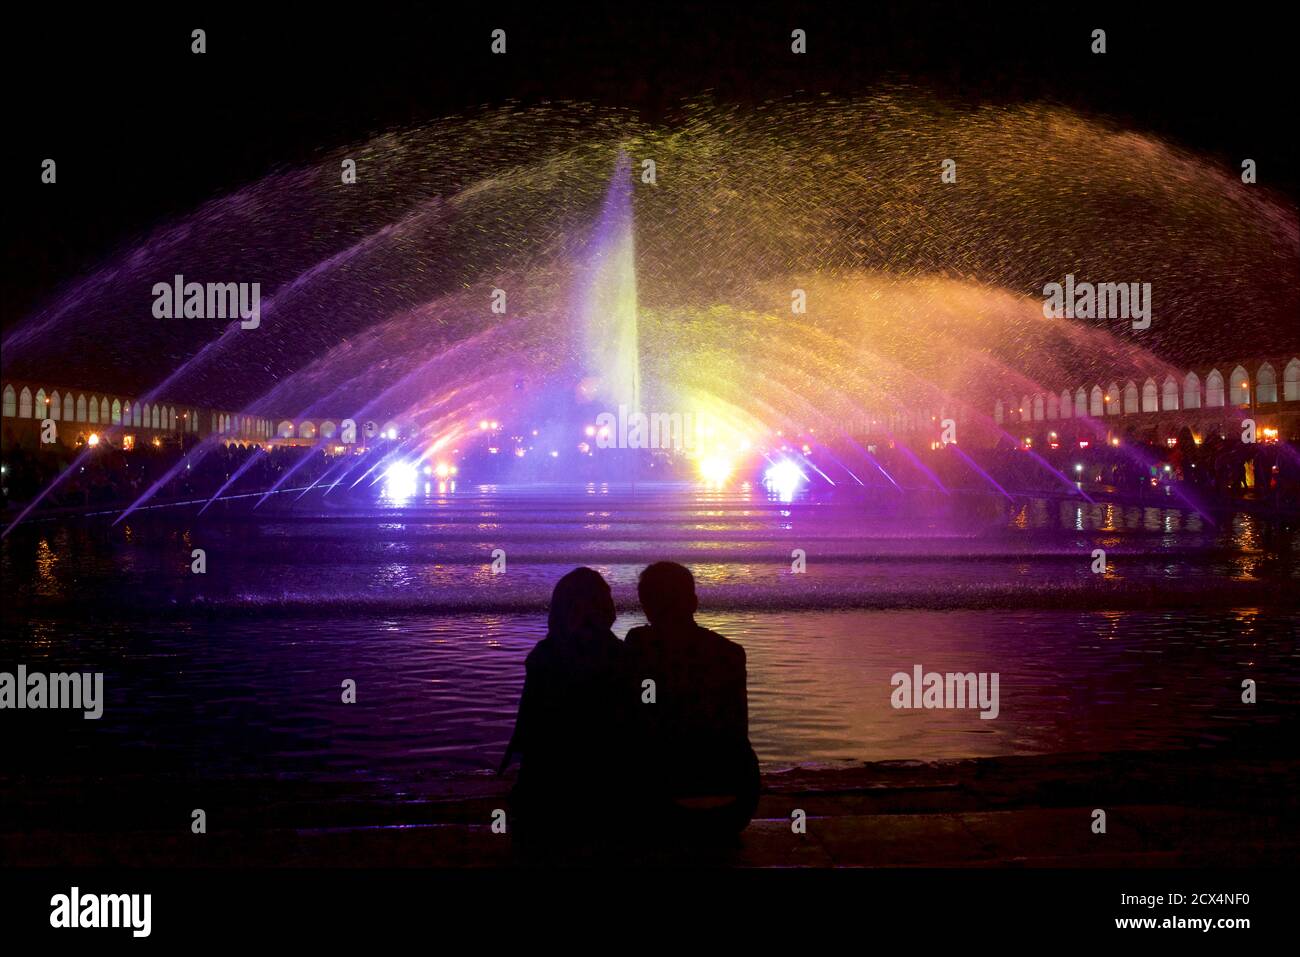 Le couple Trainian s'est taisé la nuit contre les lumières et la fontaine de la place Imam. Ispahan, Iran Banque D'Images